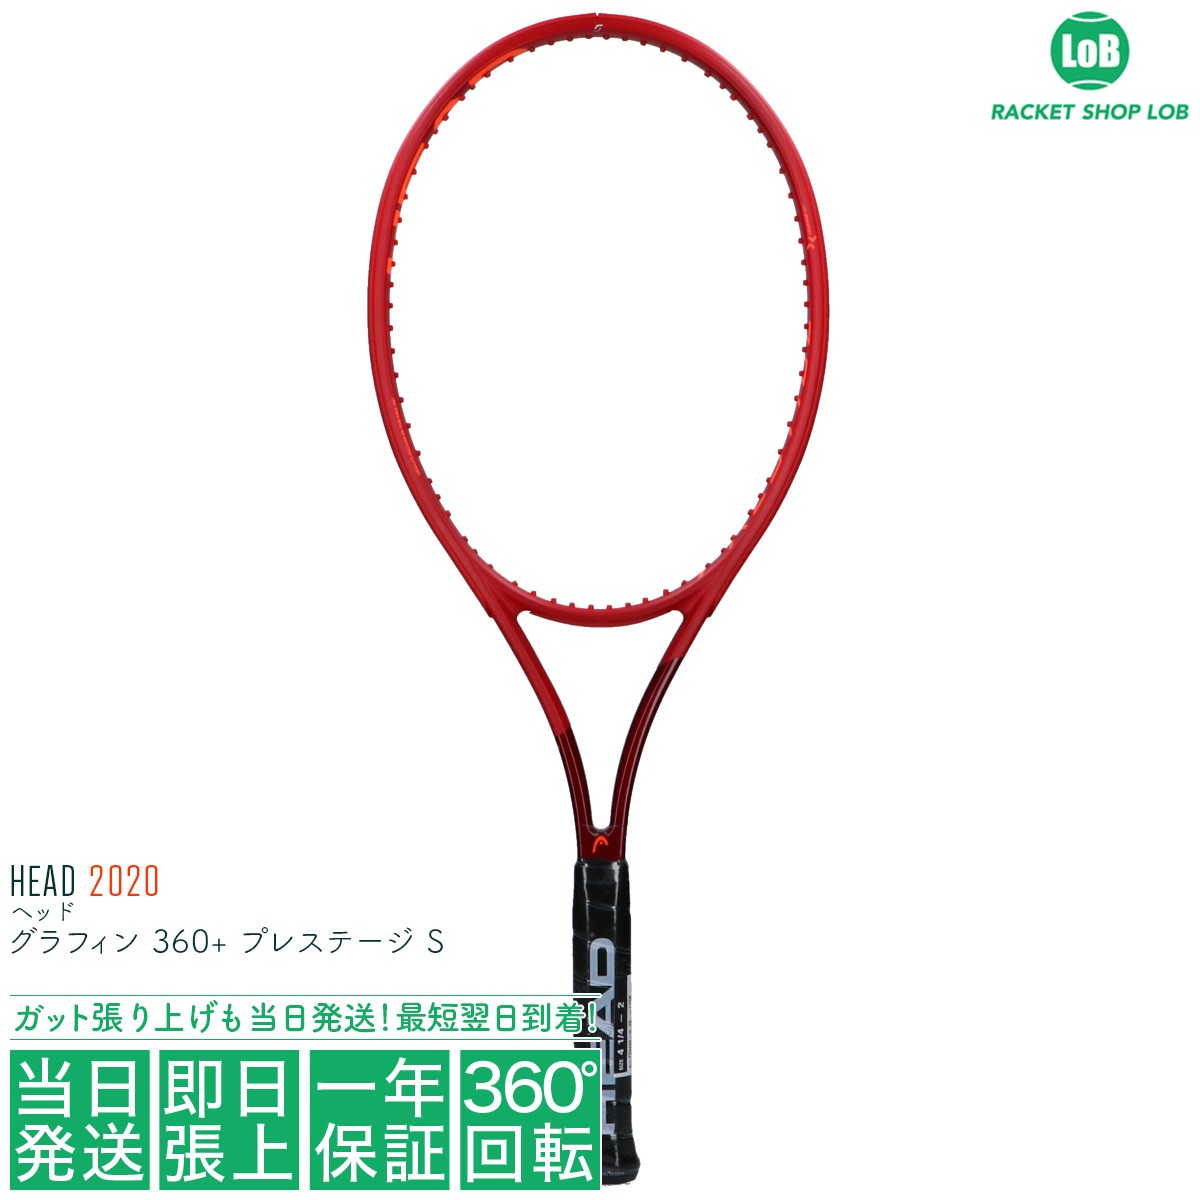 HEAD プレステージS 234440 レッド 硬式テニスラケット